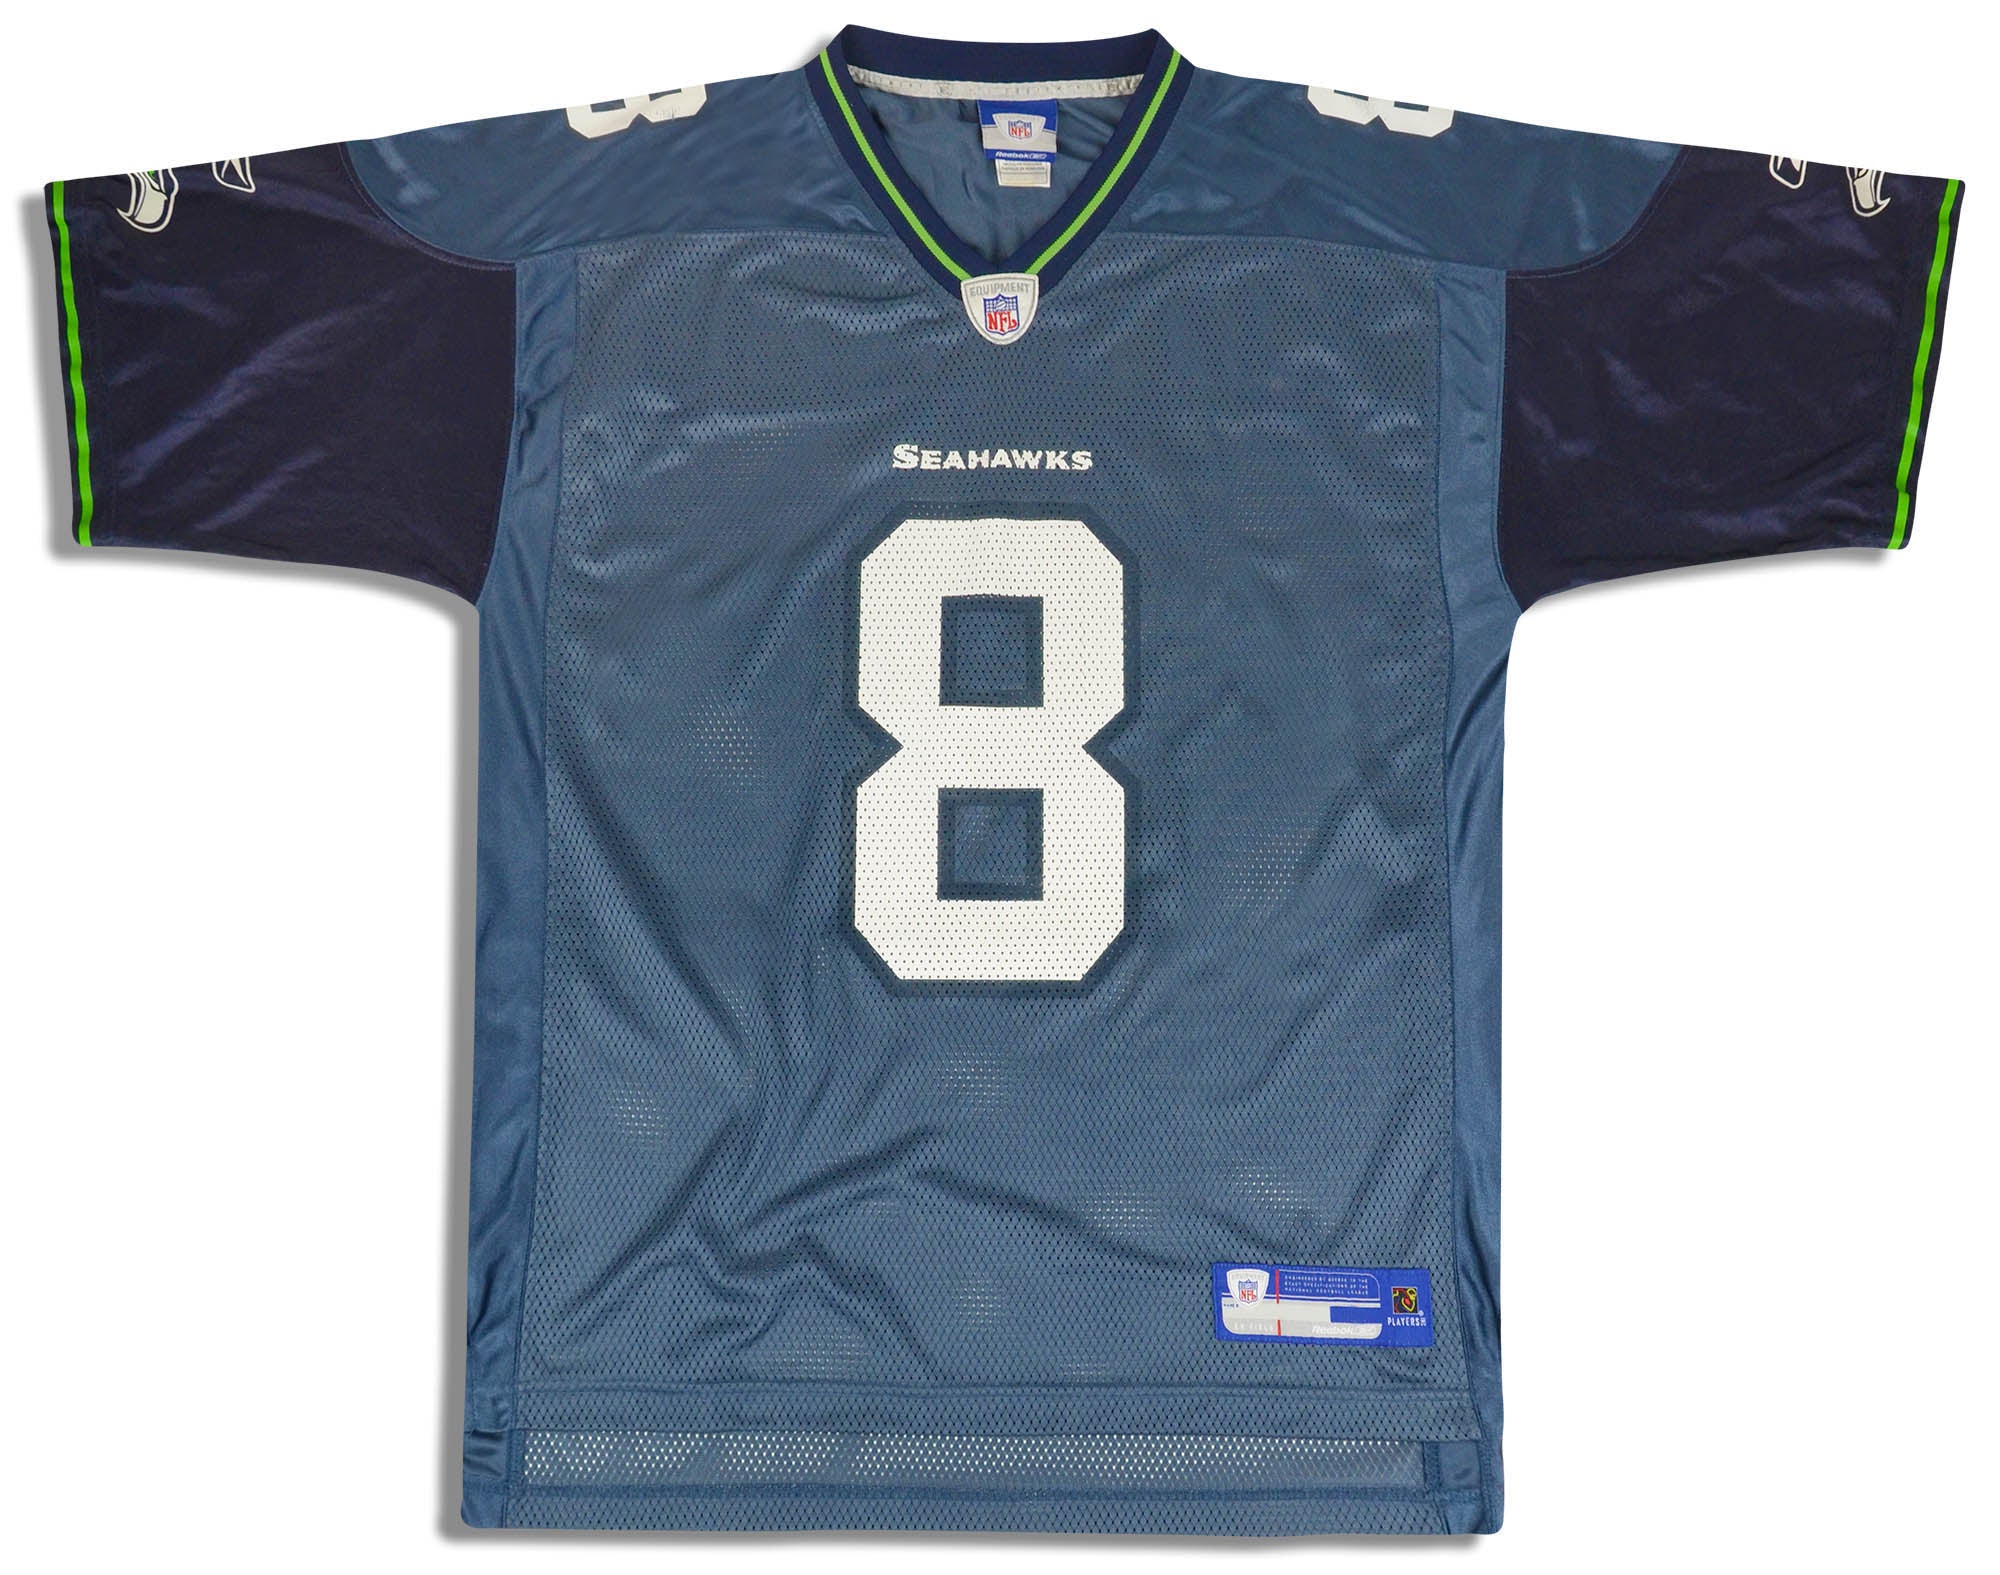 2005 seahawks jersey